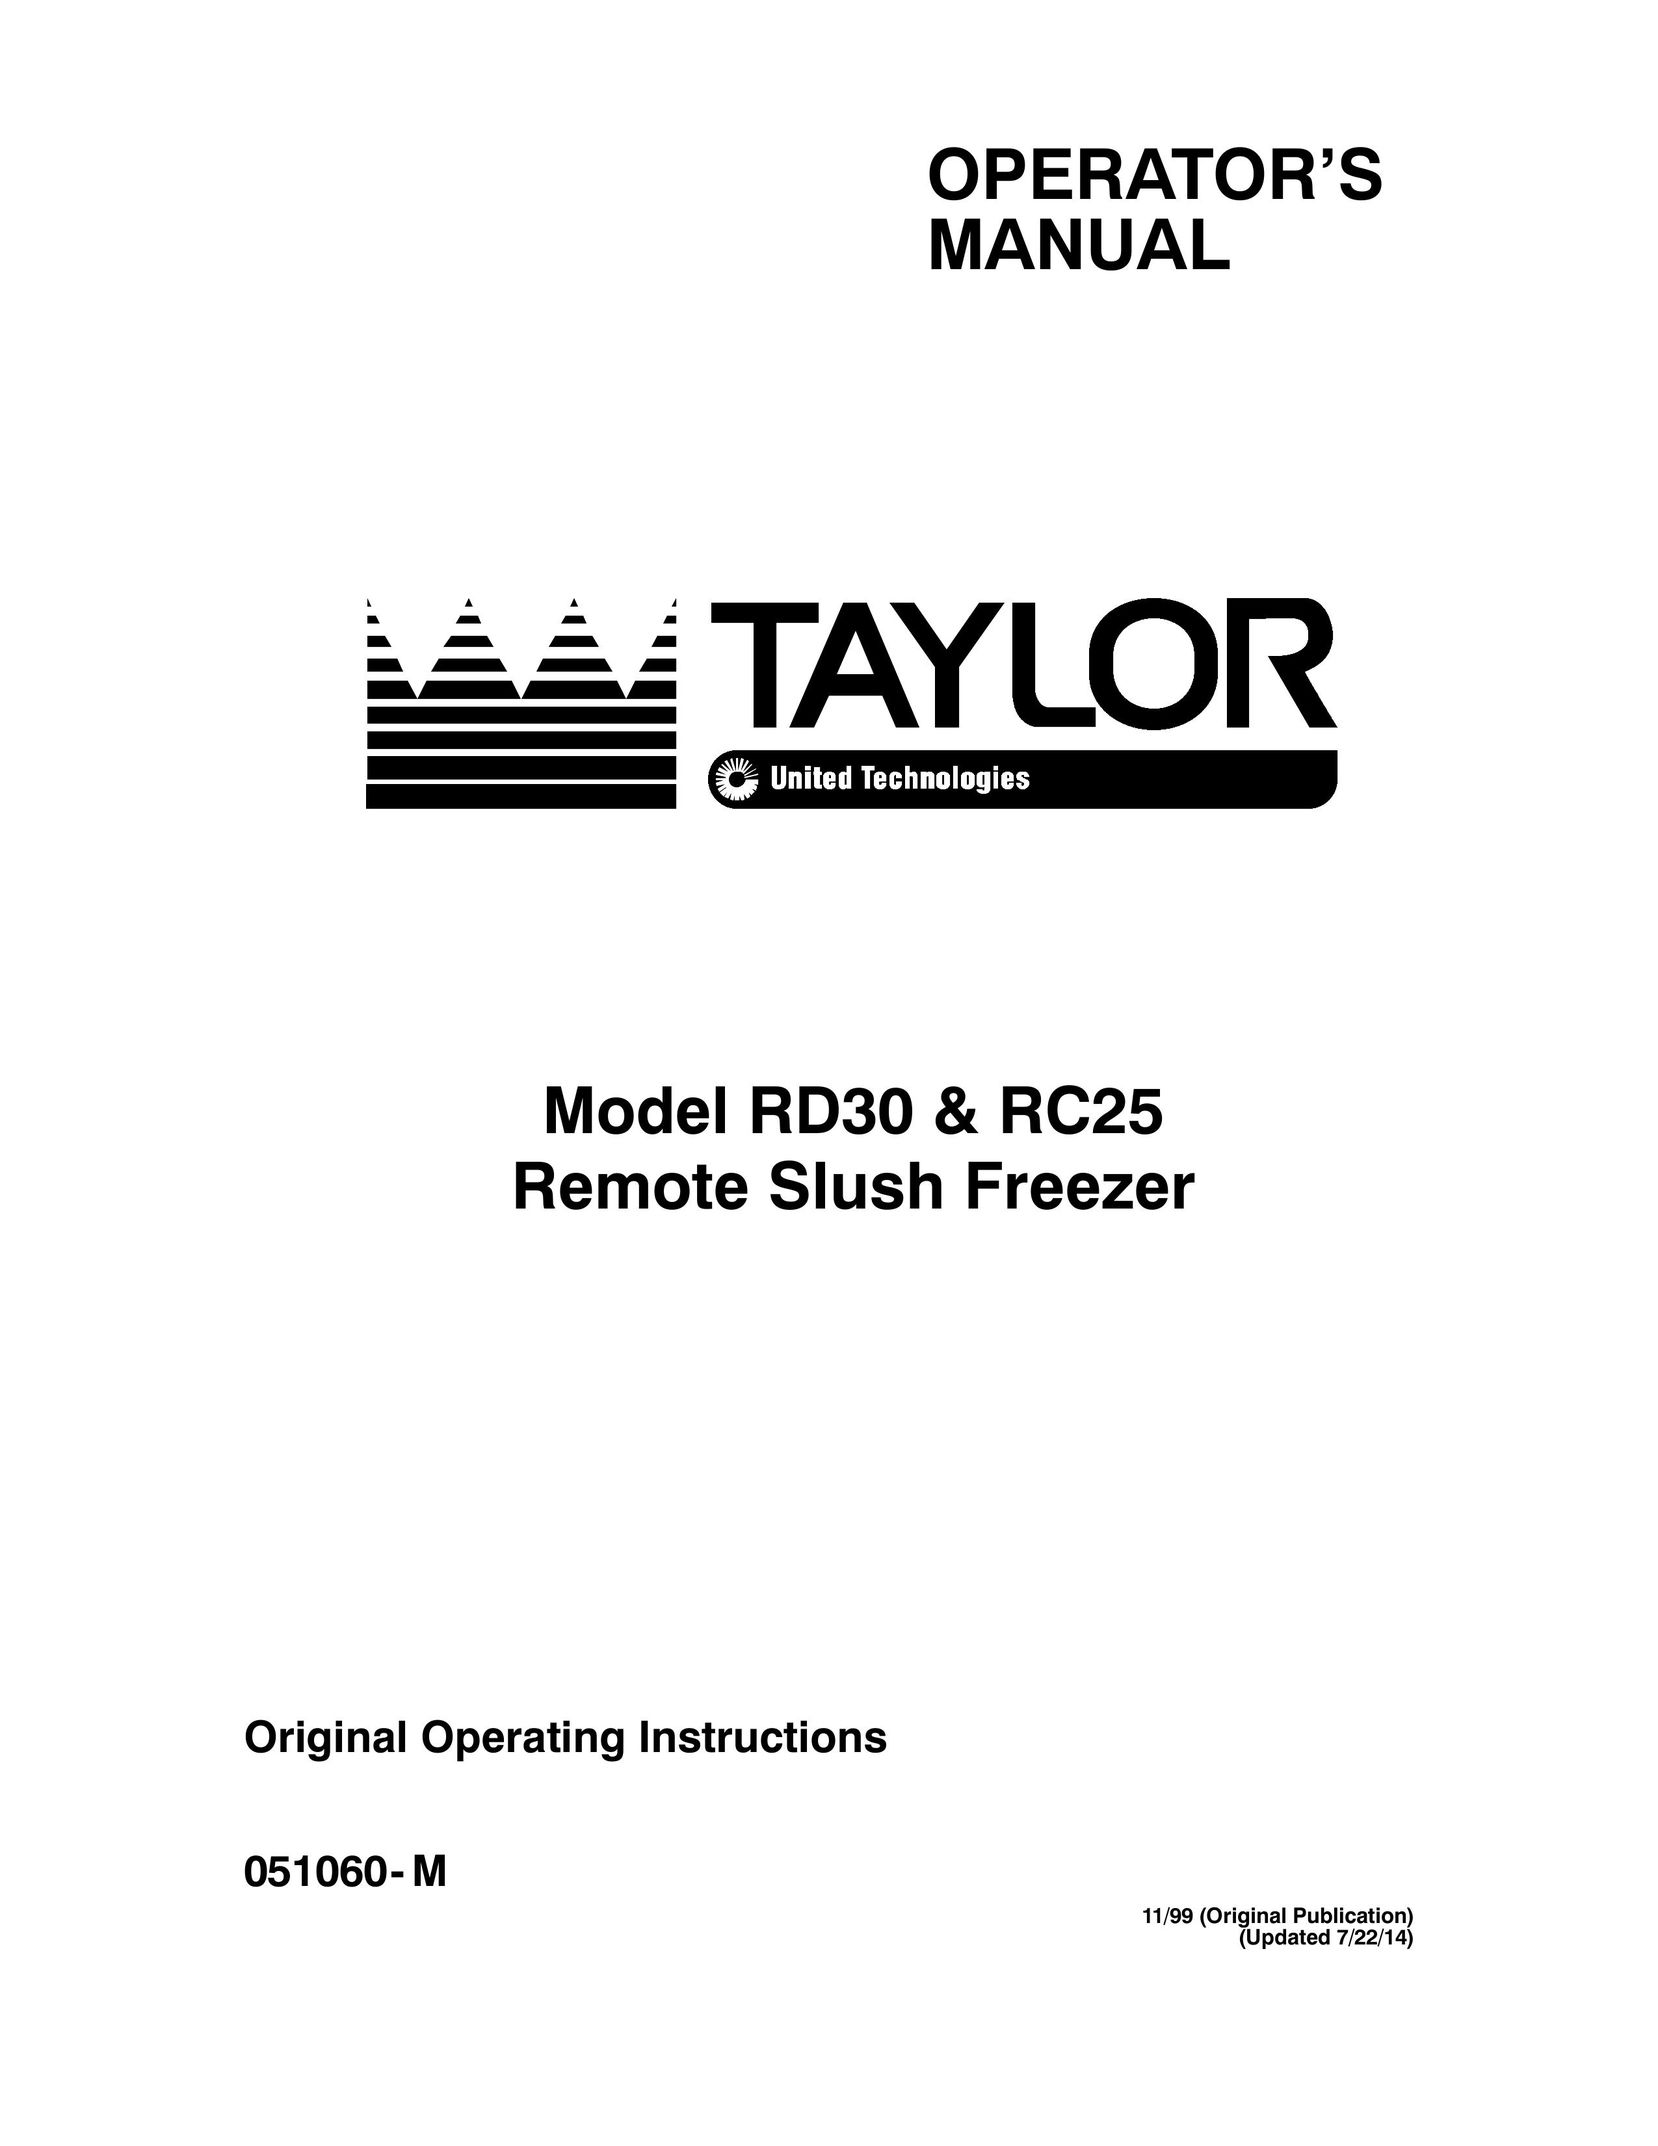 Taylor RC25 Freezer User Manual